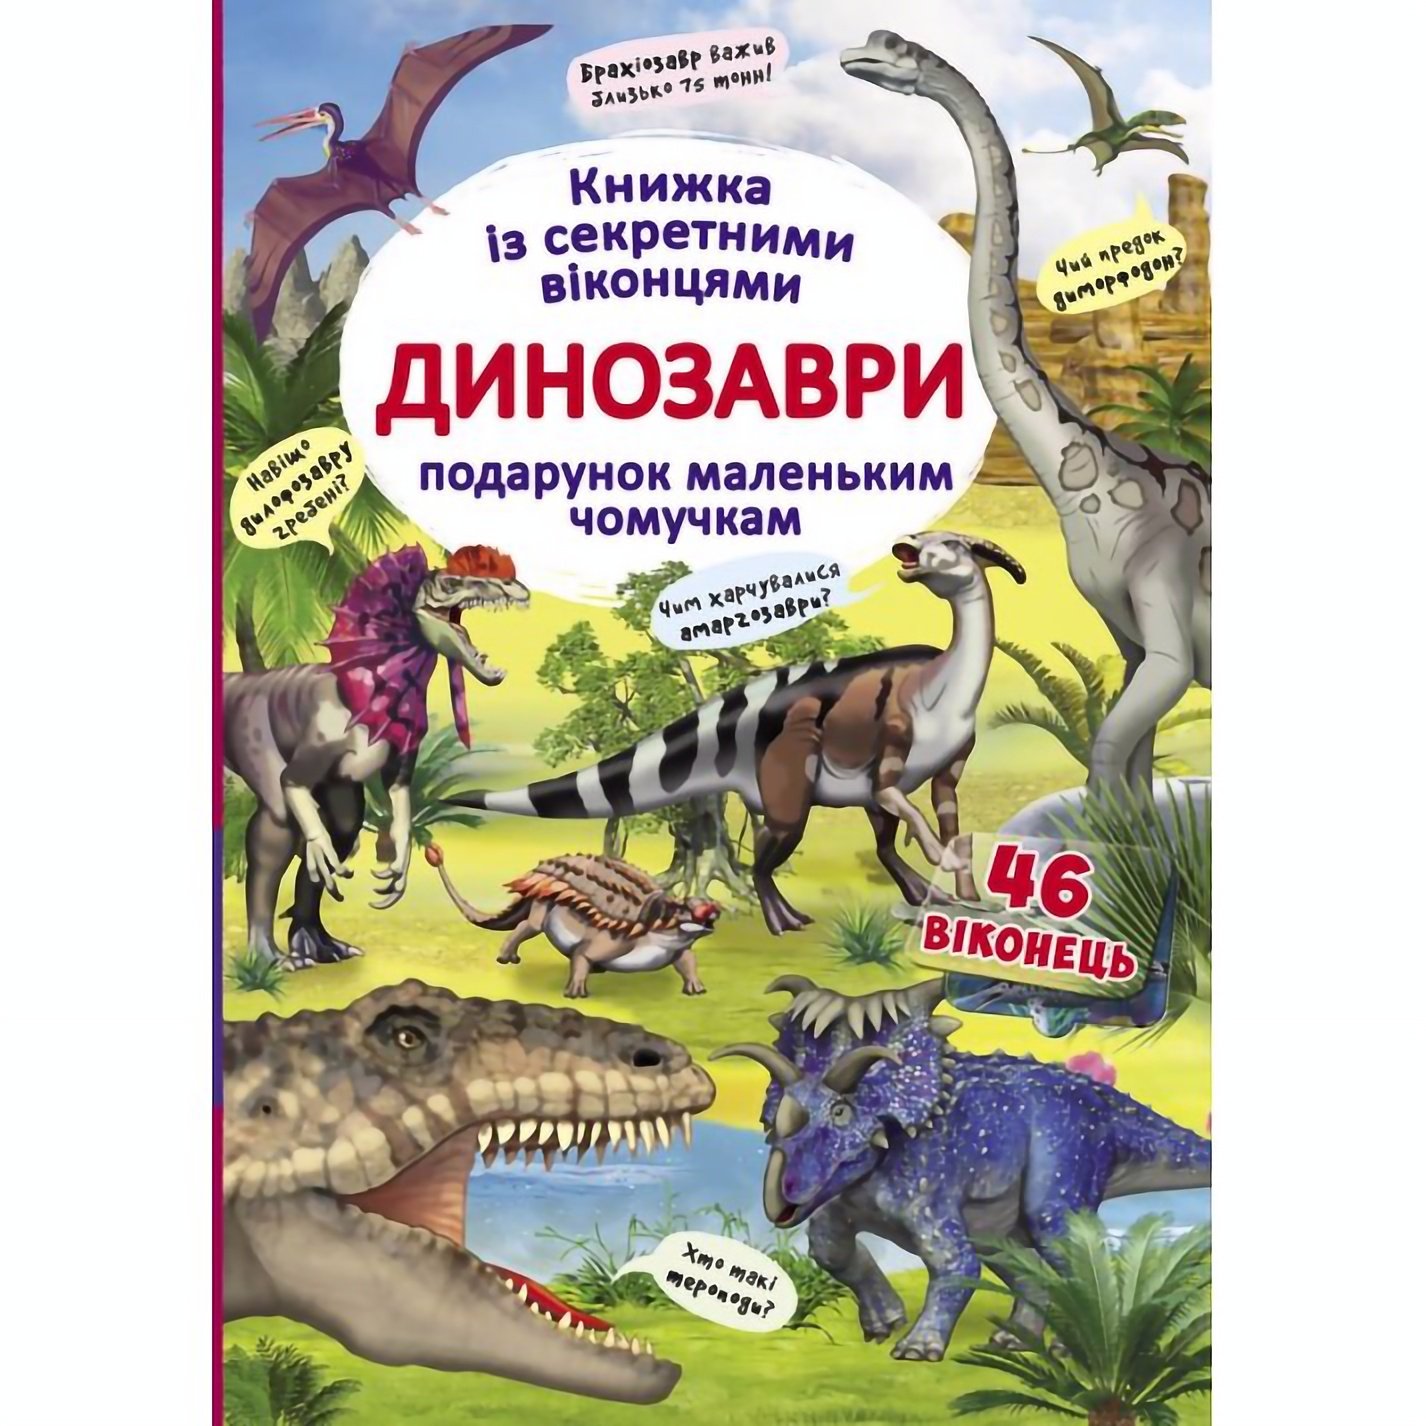 Книга Кристал Бук Динозавры, с секретными окошками (F00020587) - фото 1